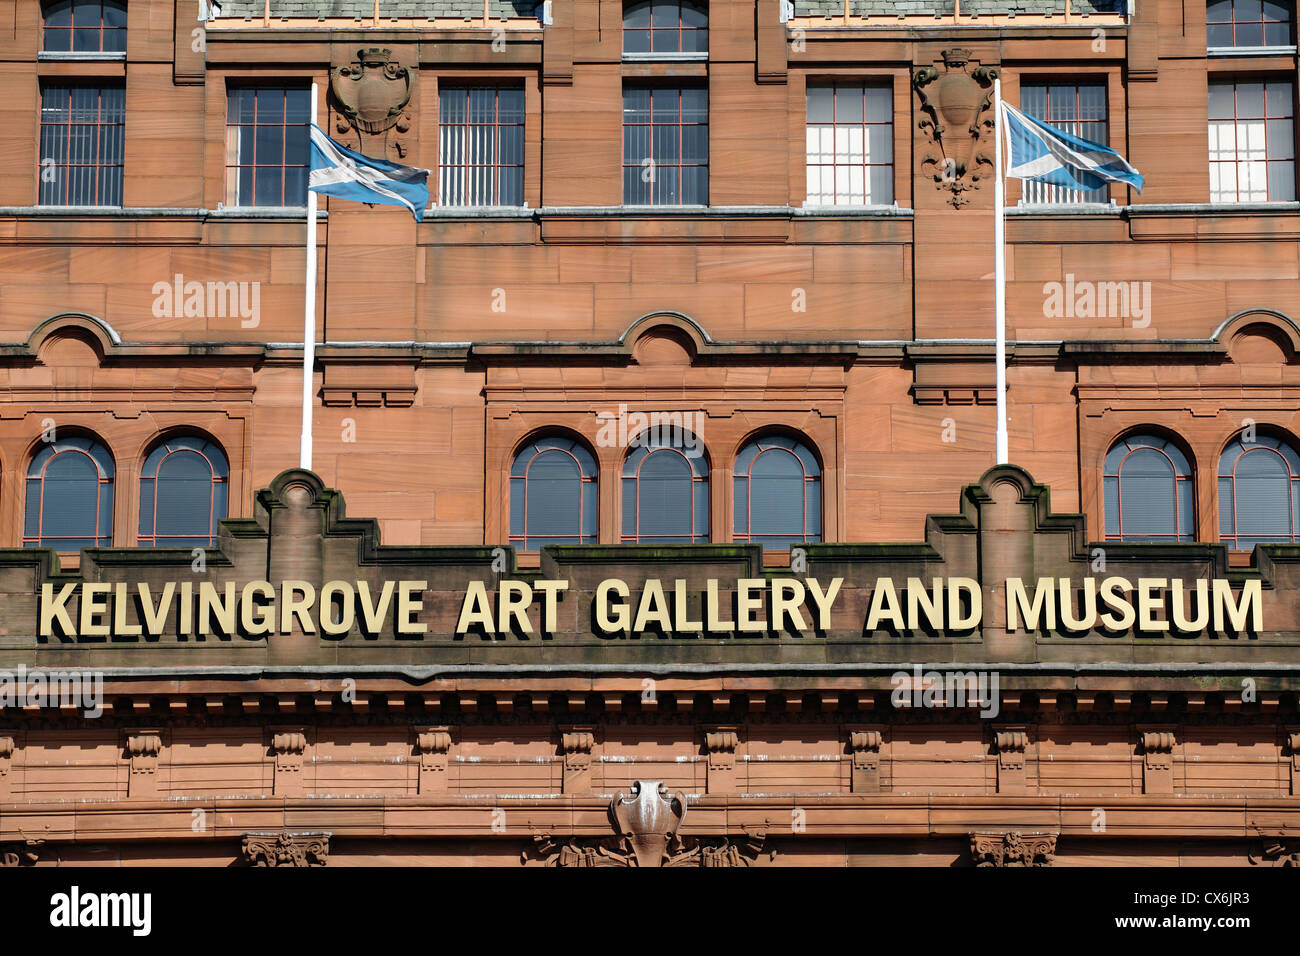 Kelvingrove Art Gallery and Museum Glasgow, detalle de la señal y banderas en la fachada sur, Escocia, Reino Unido Foto de stock